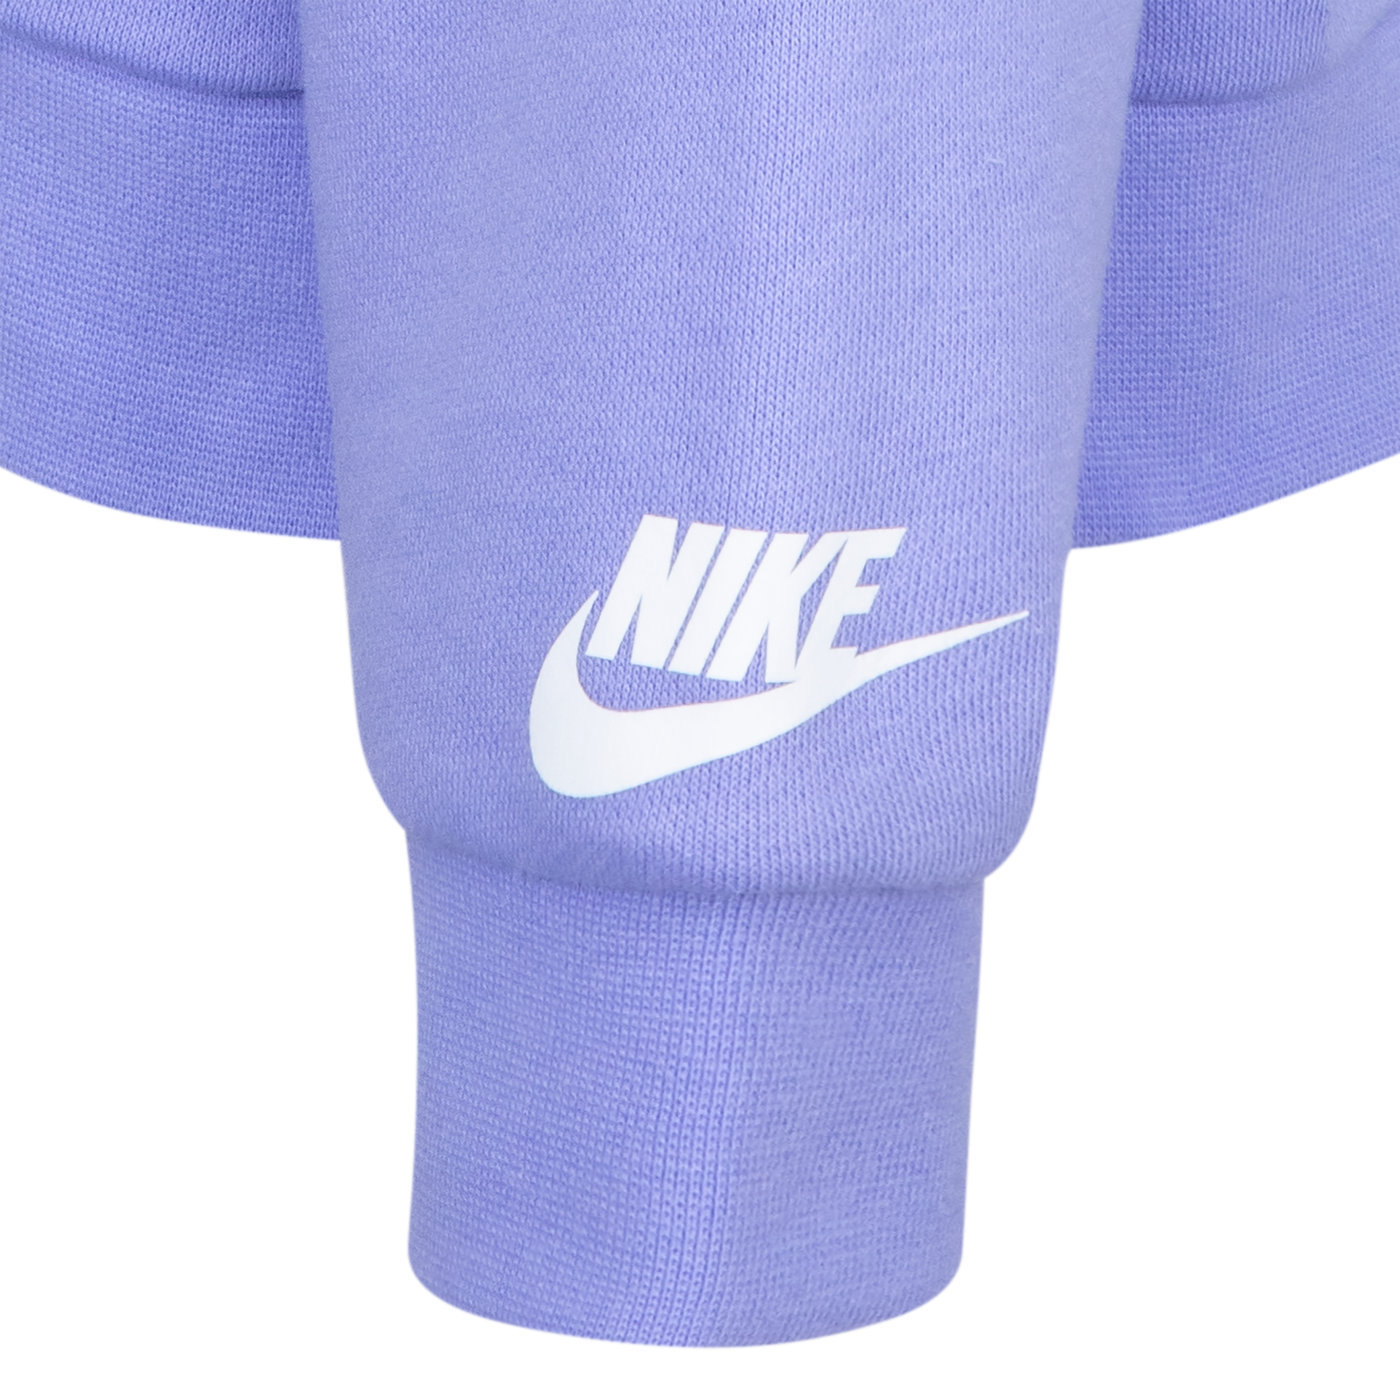 Nike Blue Cloud Wash Full Zip Hoodie Sweatshirt Nike   